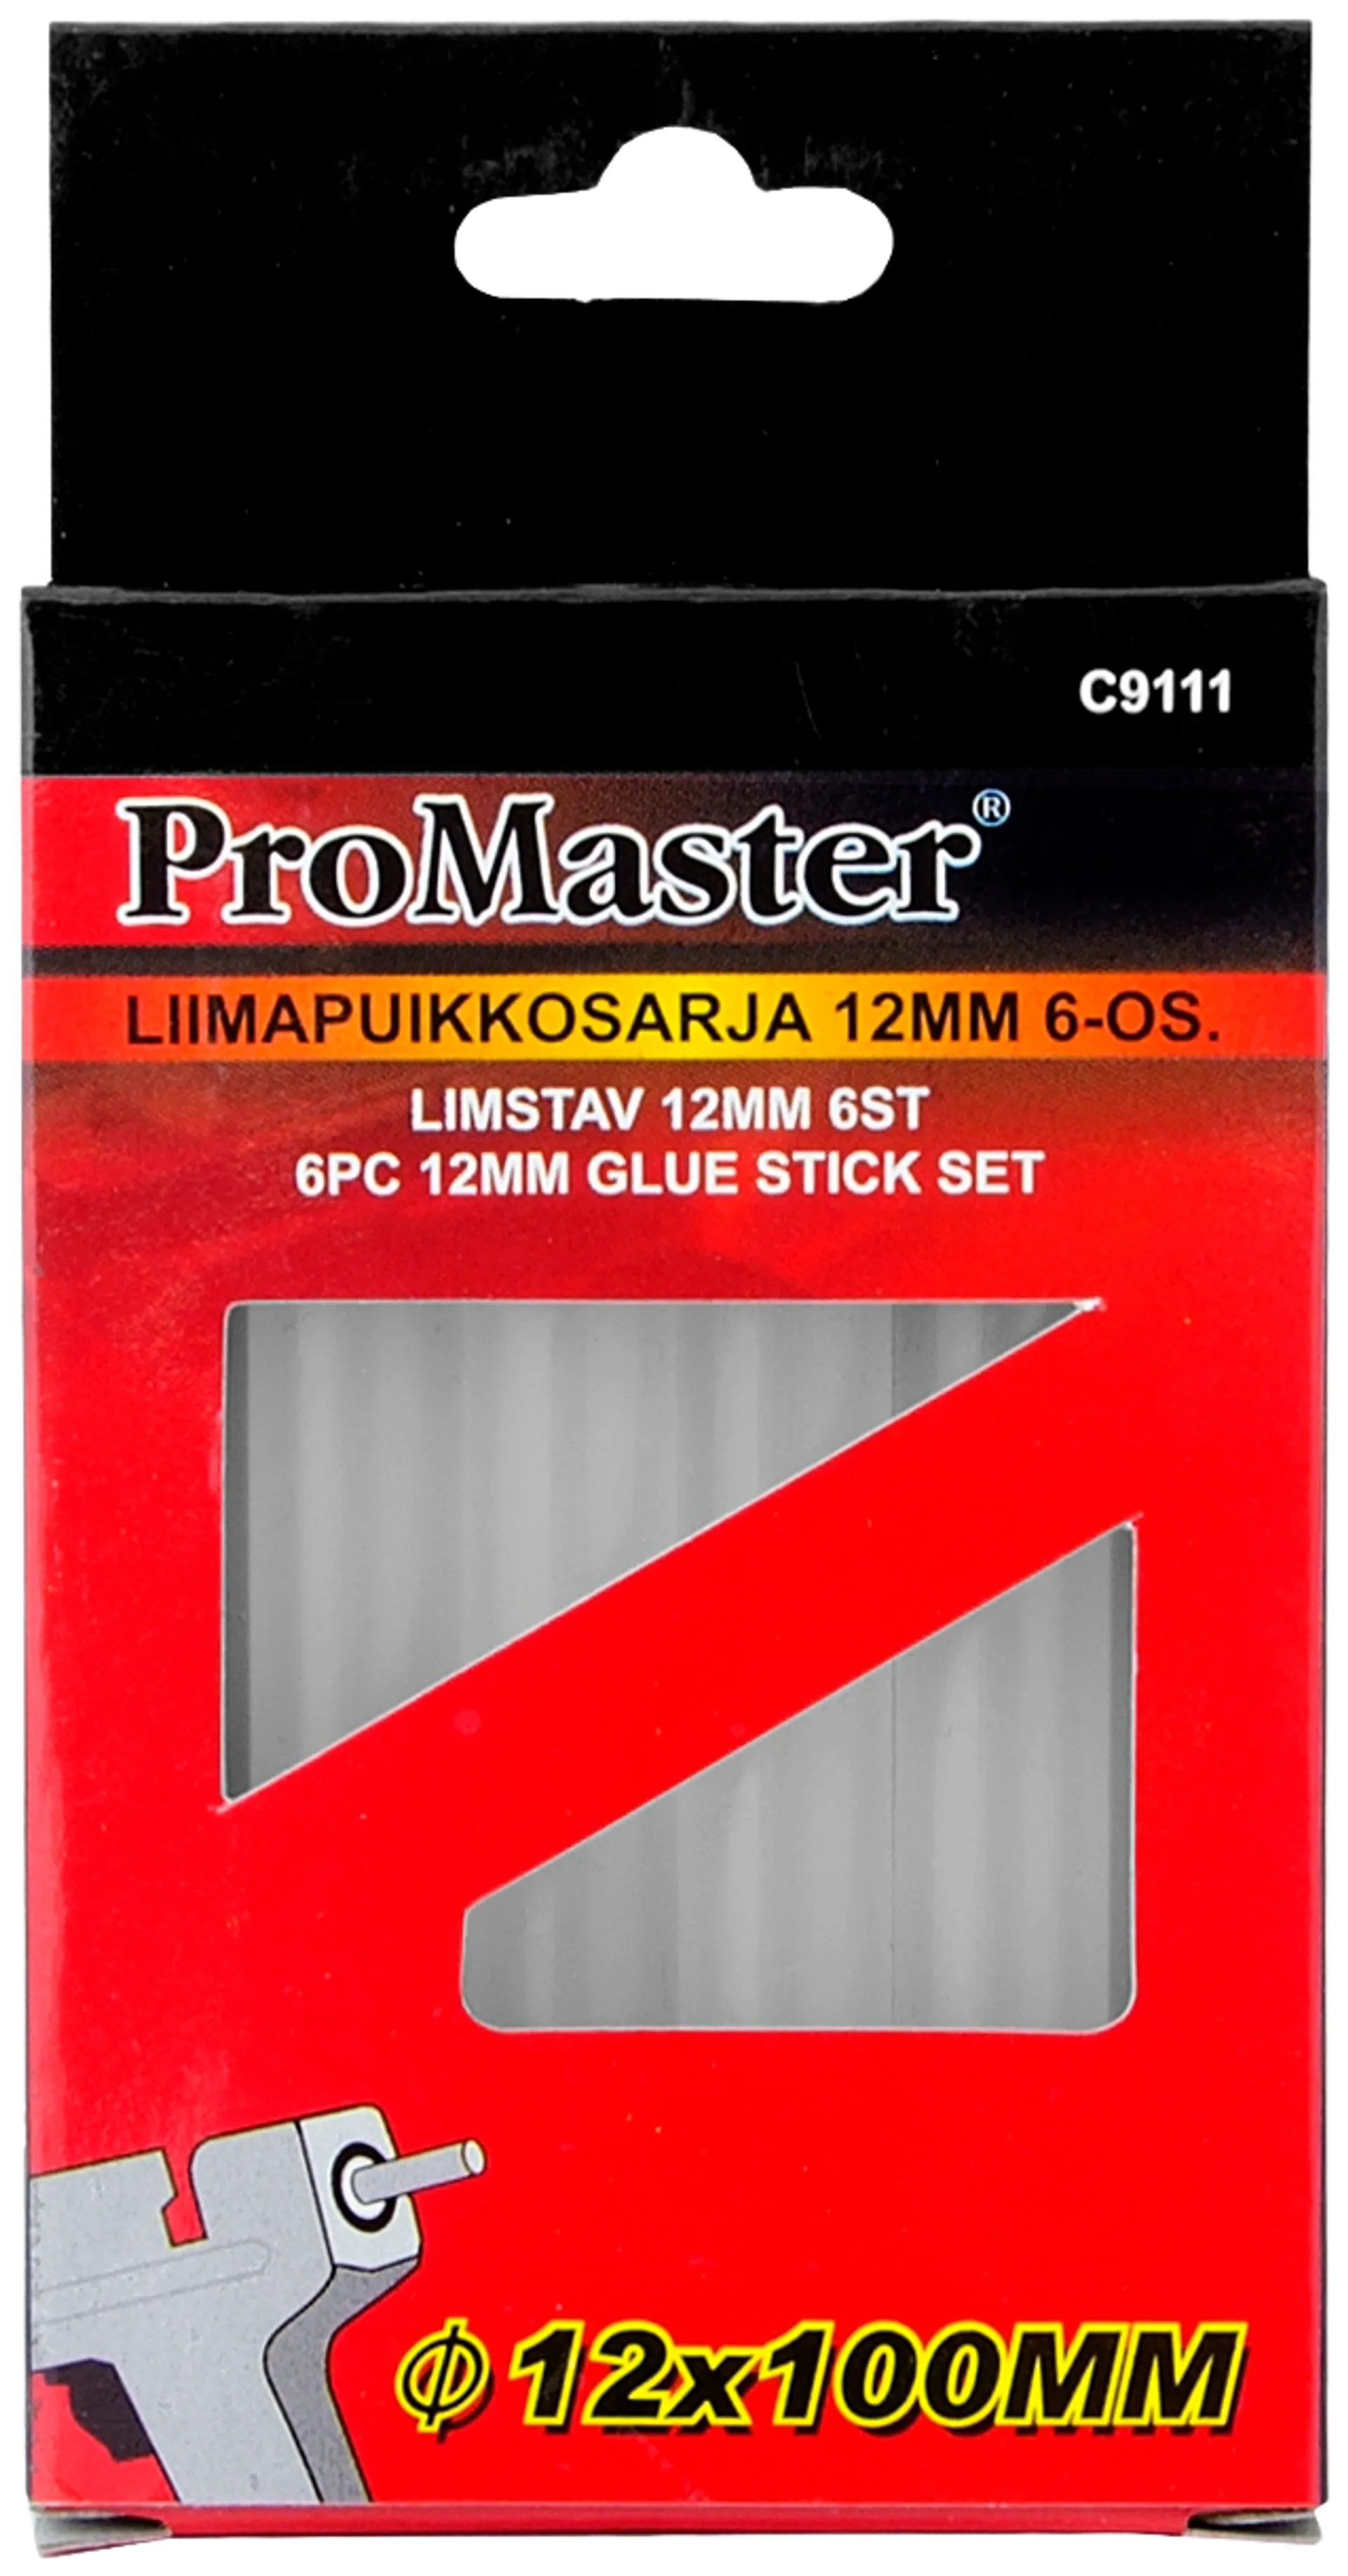 Pro Master liimapuikkosarja 12mm 6-os